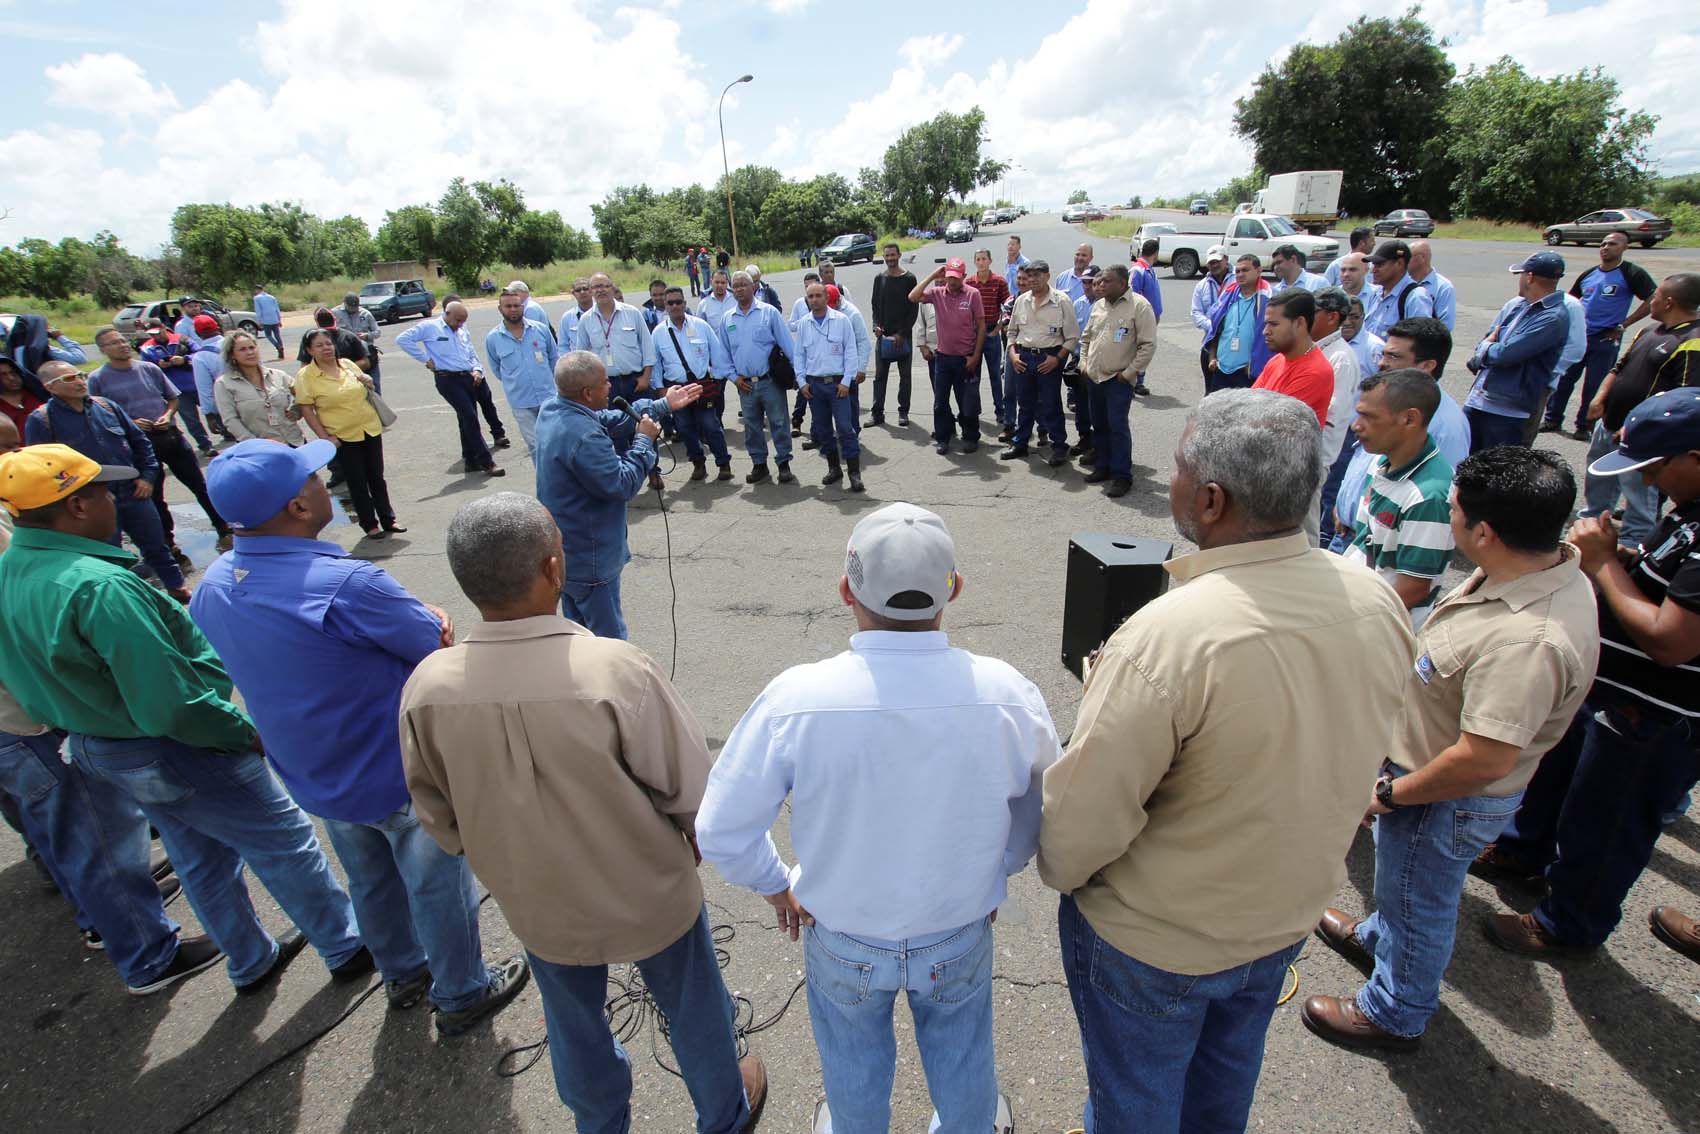 Dirigentes sindicales e integrantes de movimientos laborales condenan la grave situación que enfrentan los trabajadores y dirigentes de Guayana